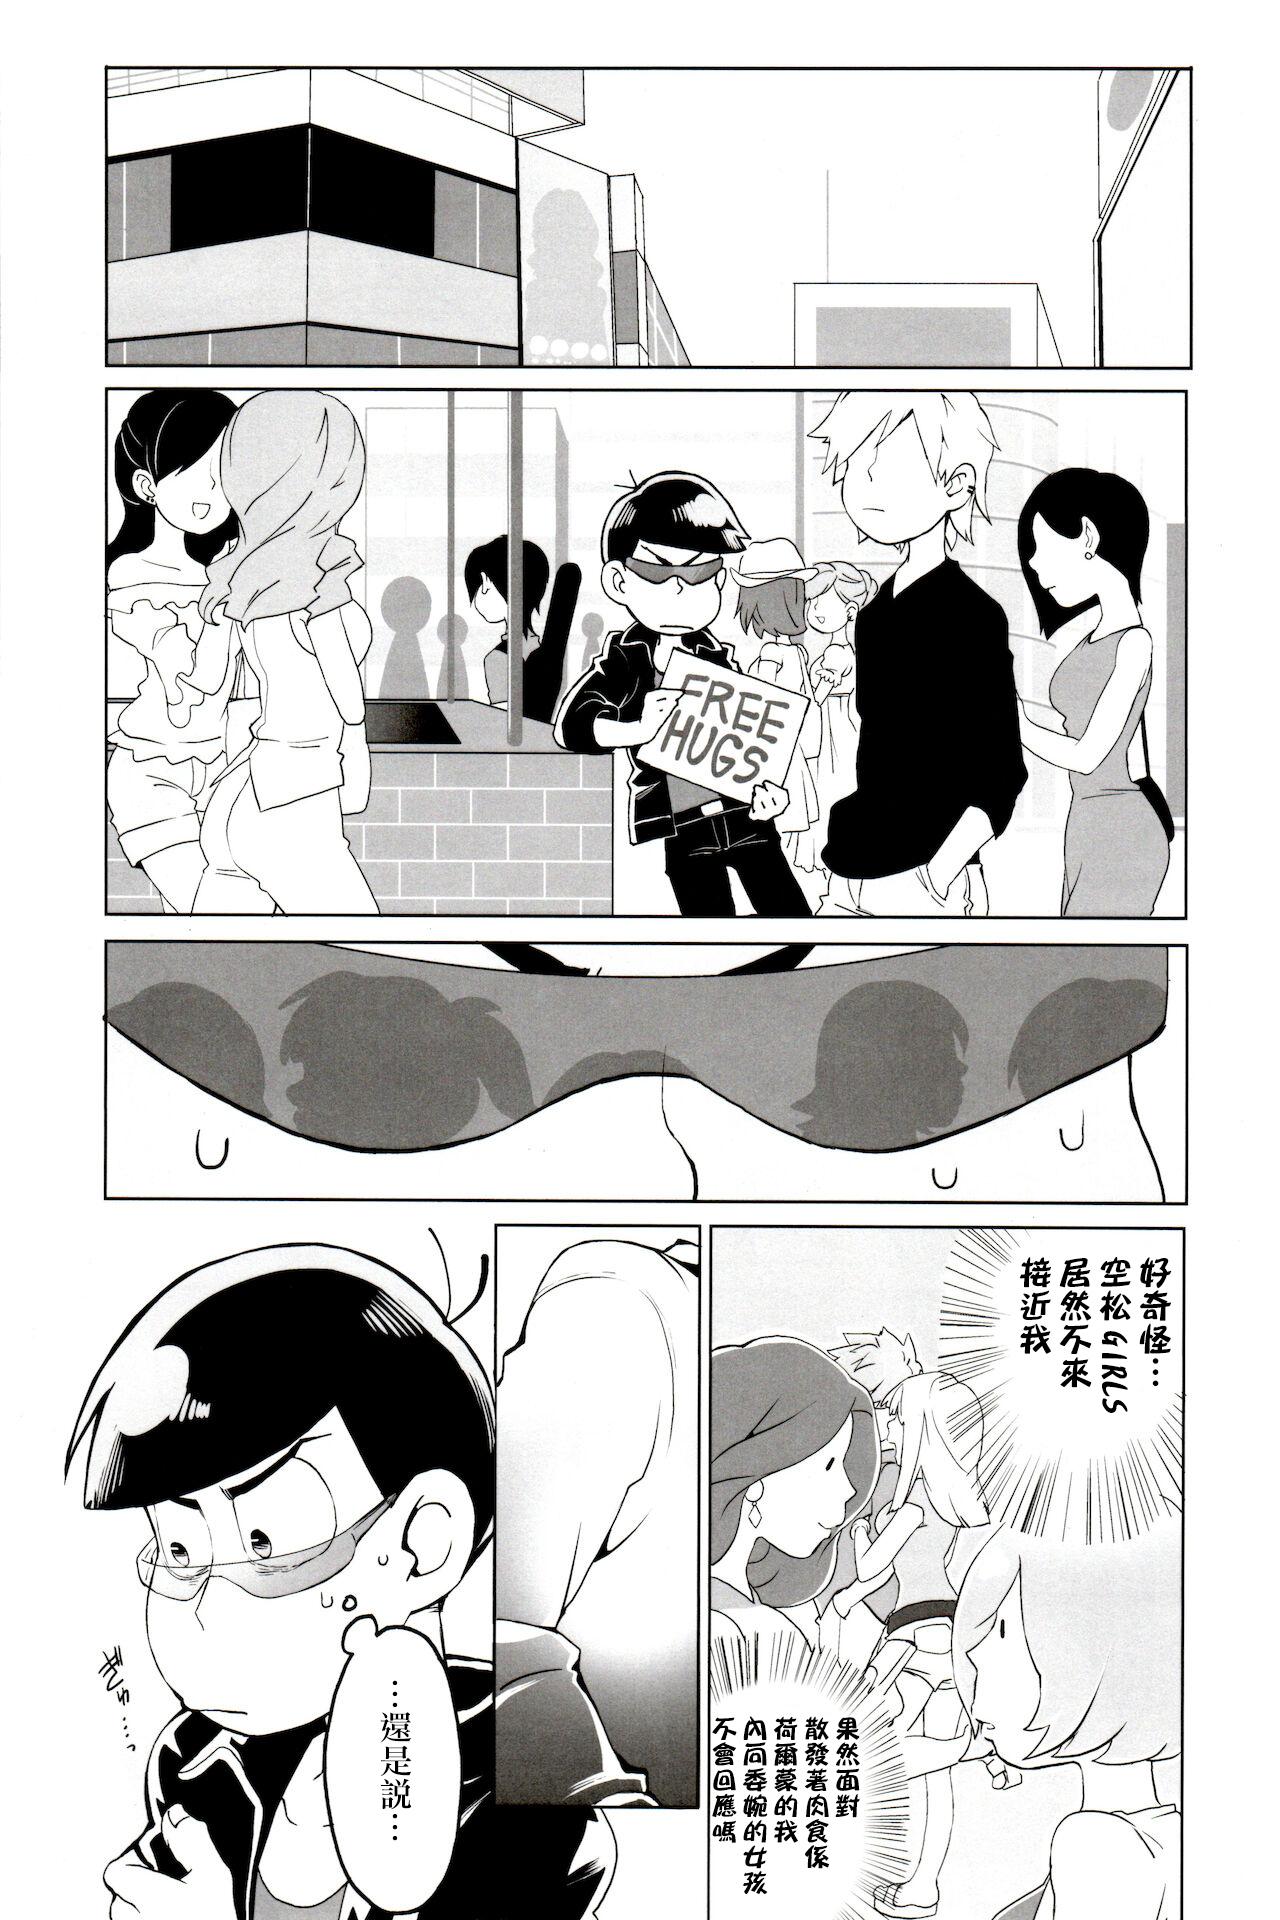 Rebolando Matsu Shiru Deodorant | 松汁止汗除臭劑 - Osomatsu san Massage Sex - Page 9